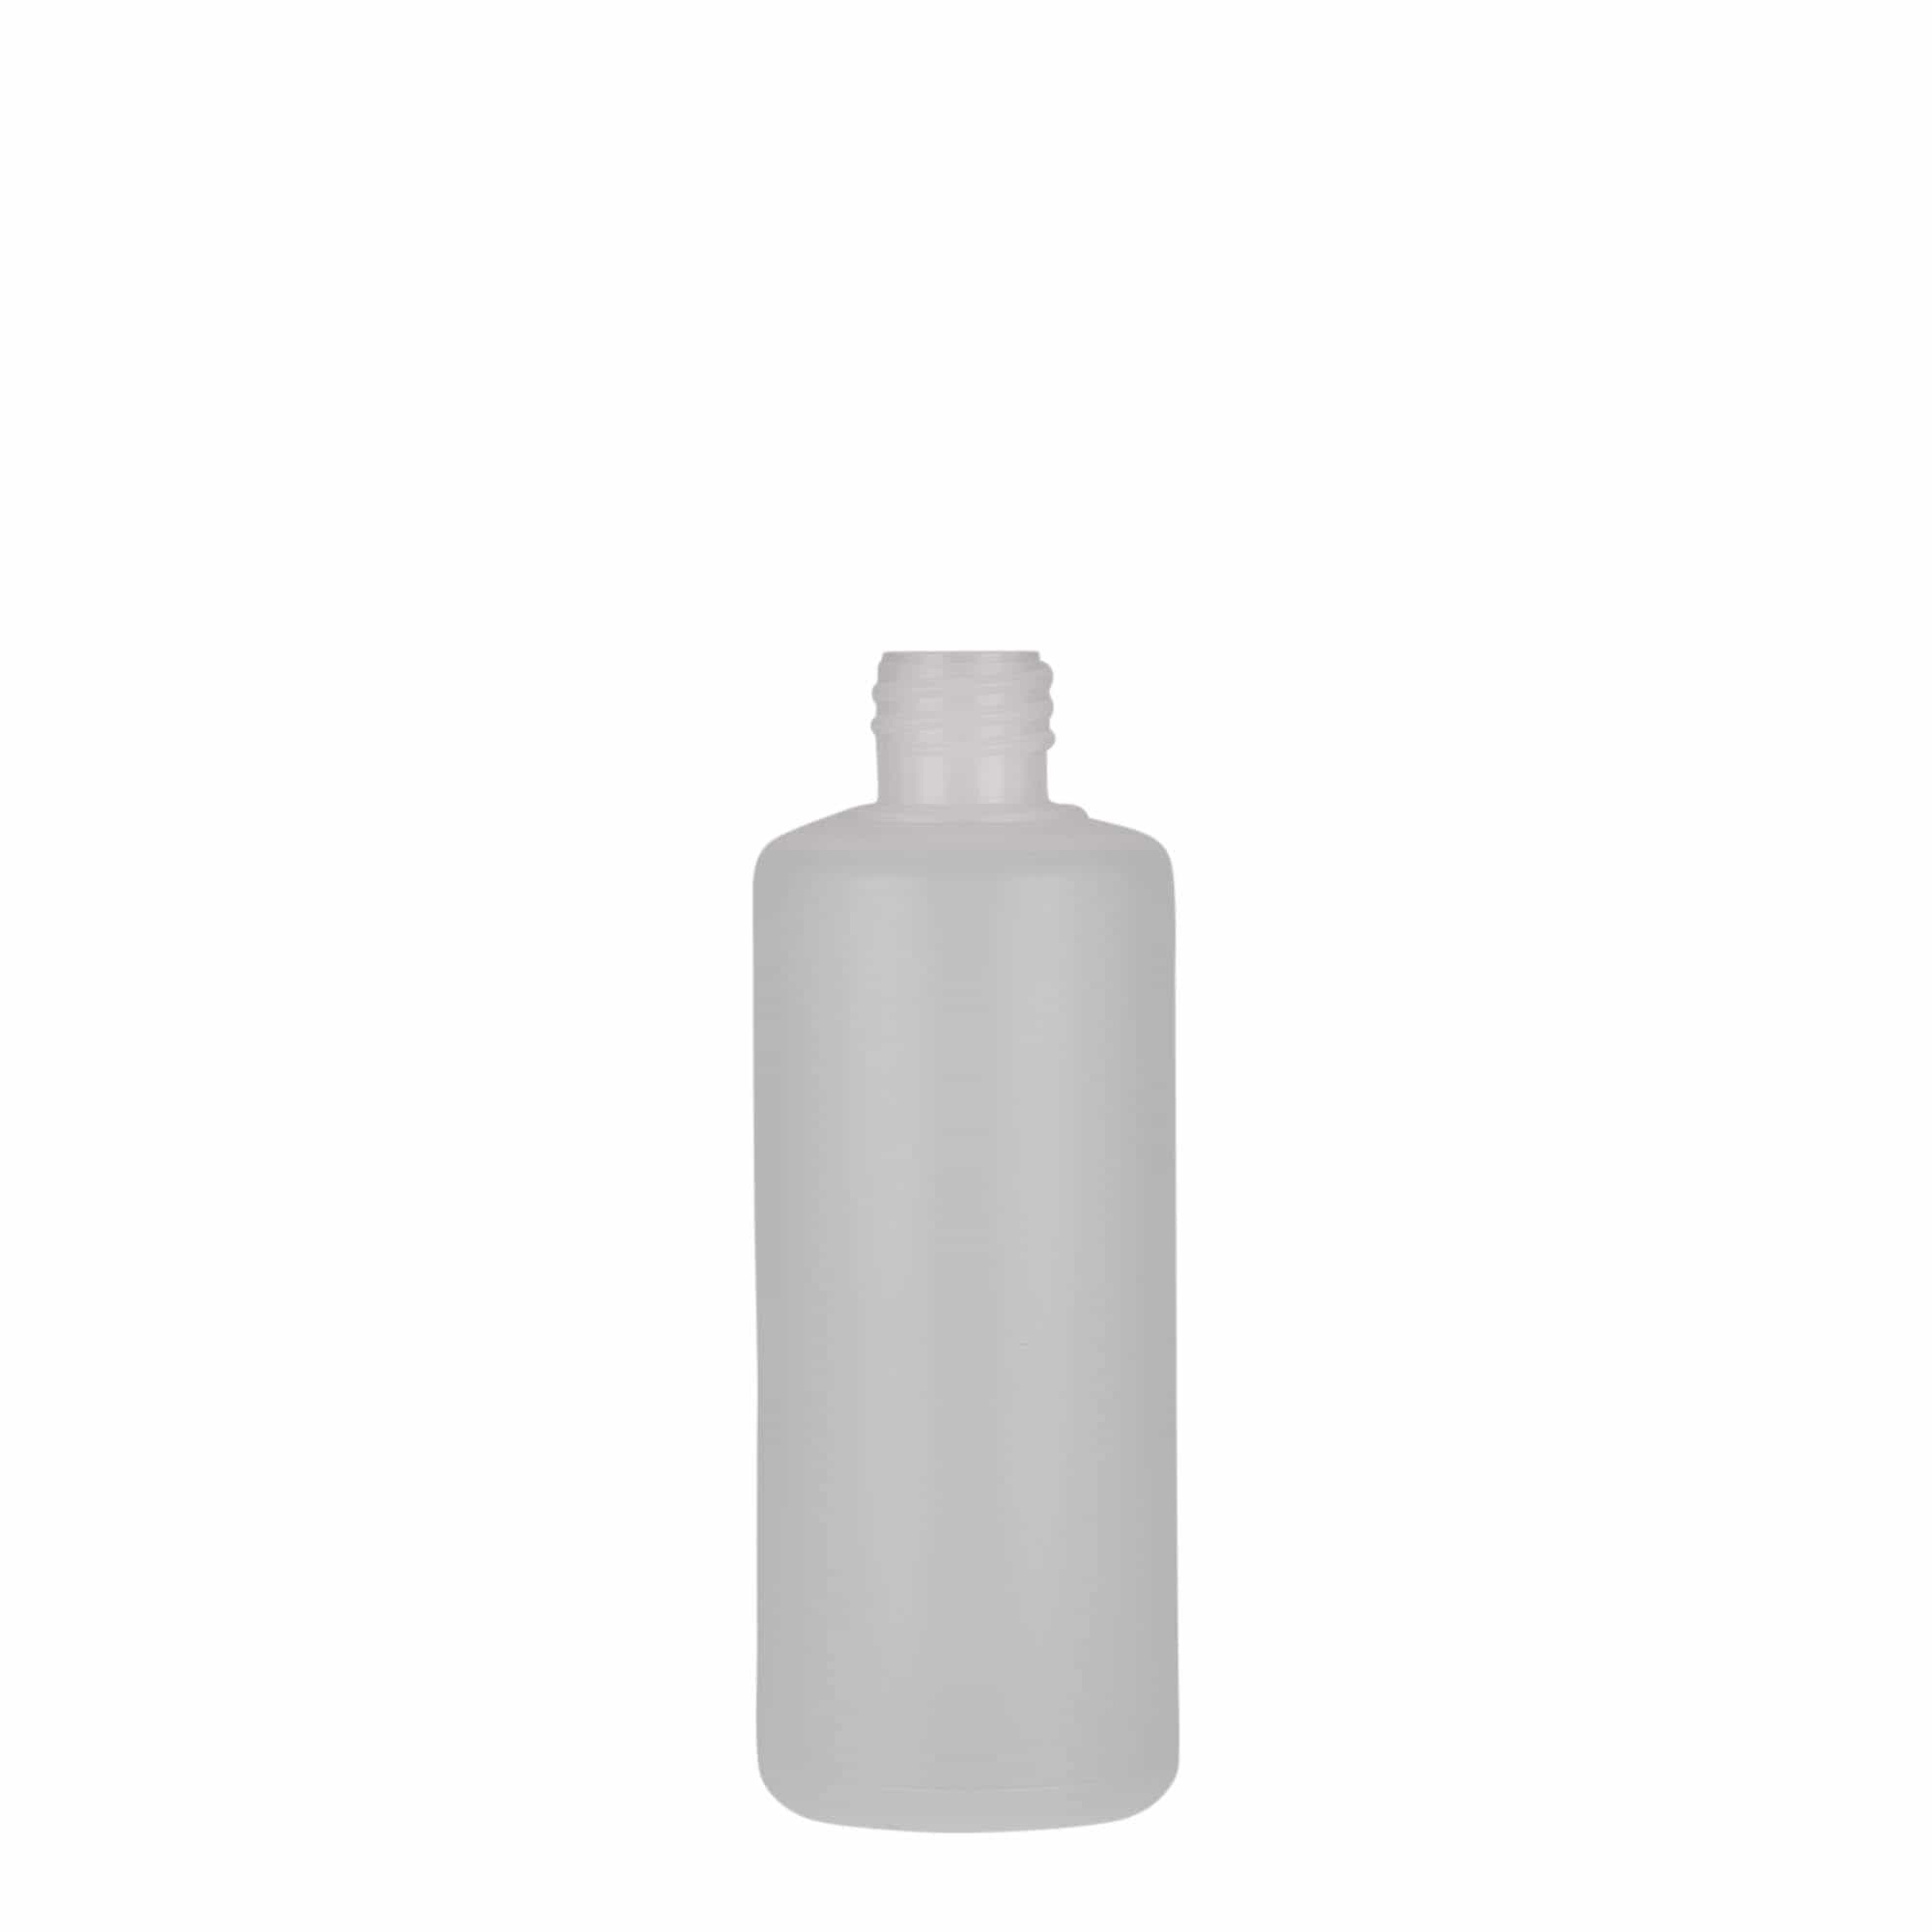 100 ml round bottle, PE plastic, natural, closure: screw cap